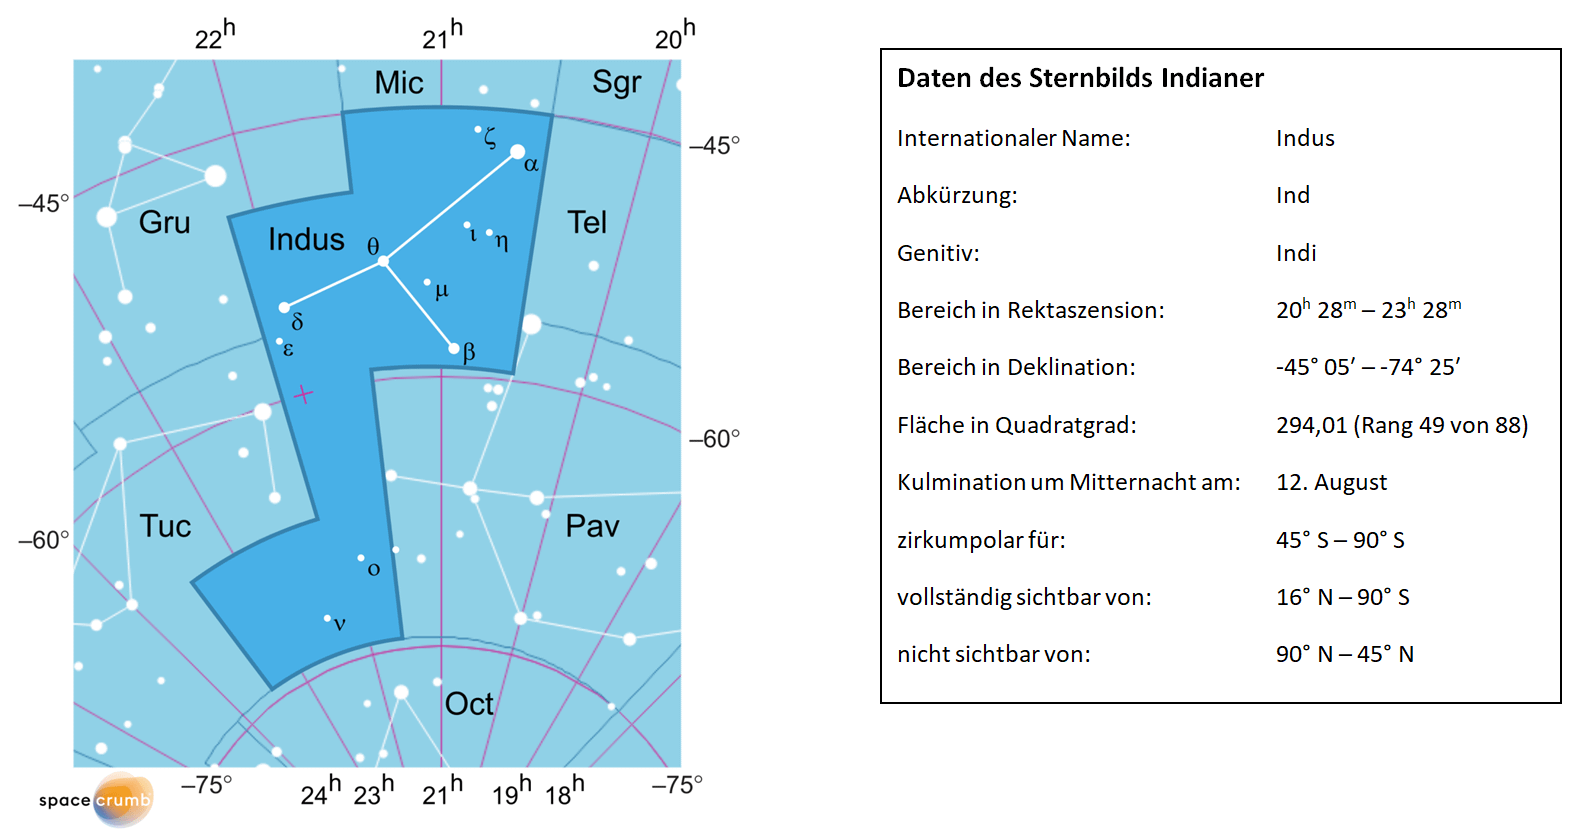 Links zeigt eine mit Koordinaten versehene  Karte eines Himmelsausschnitts weiße Sterne auf hellblauem Hintergrund. Die Fläche, die das Sternbild Indianer einnimmt, ist dunkelblau hervorgehoben. Eine Tabelle rechts gibt wichtige Daten des Sternbilds Indianer an.